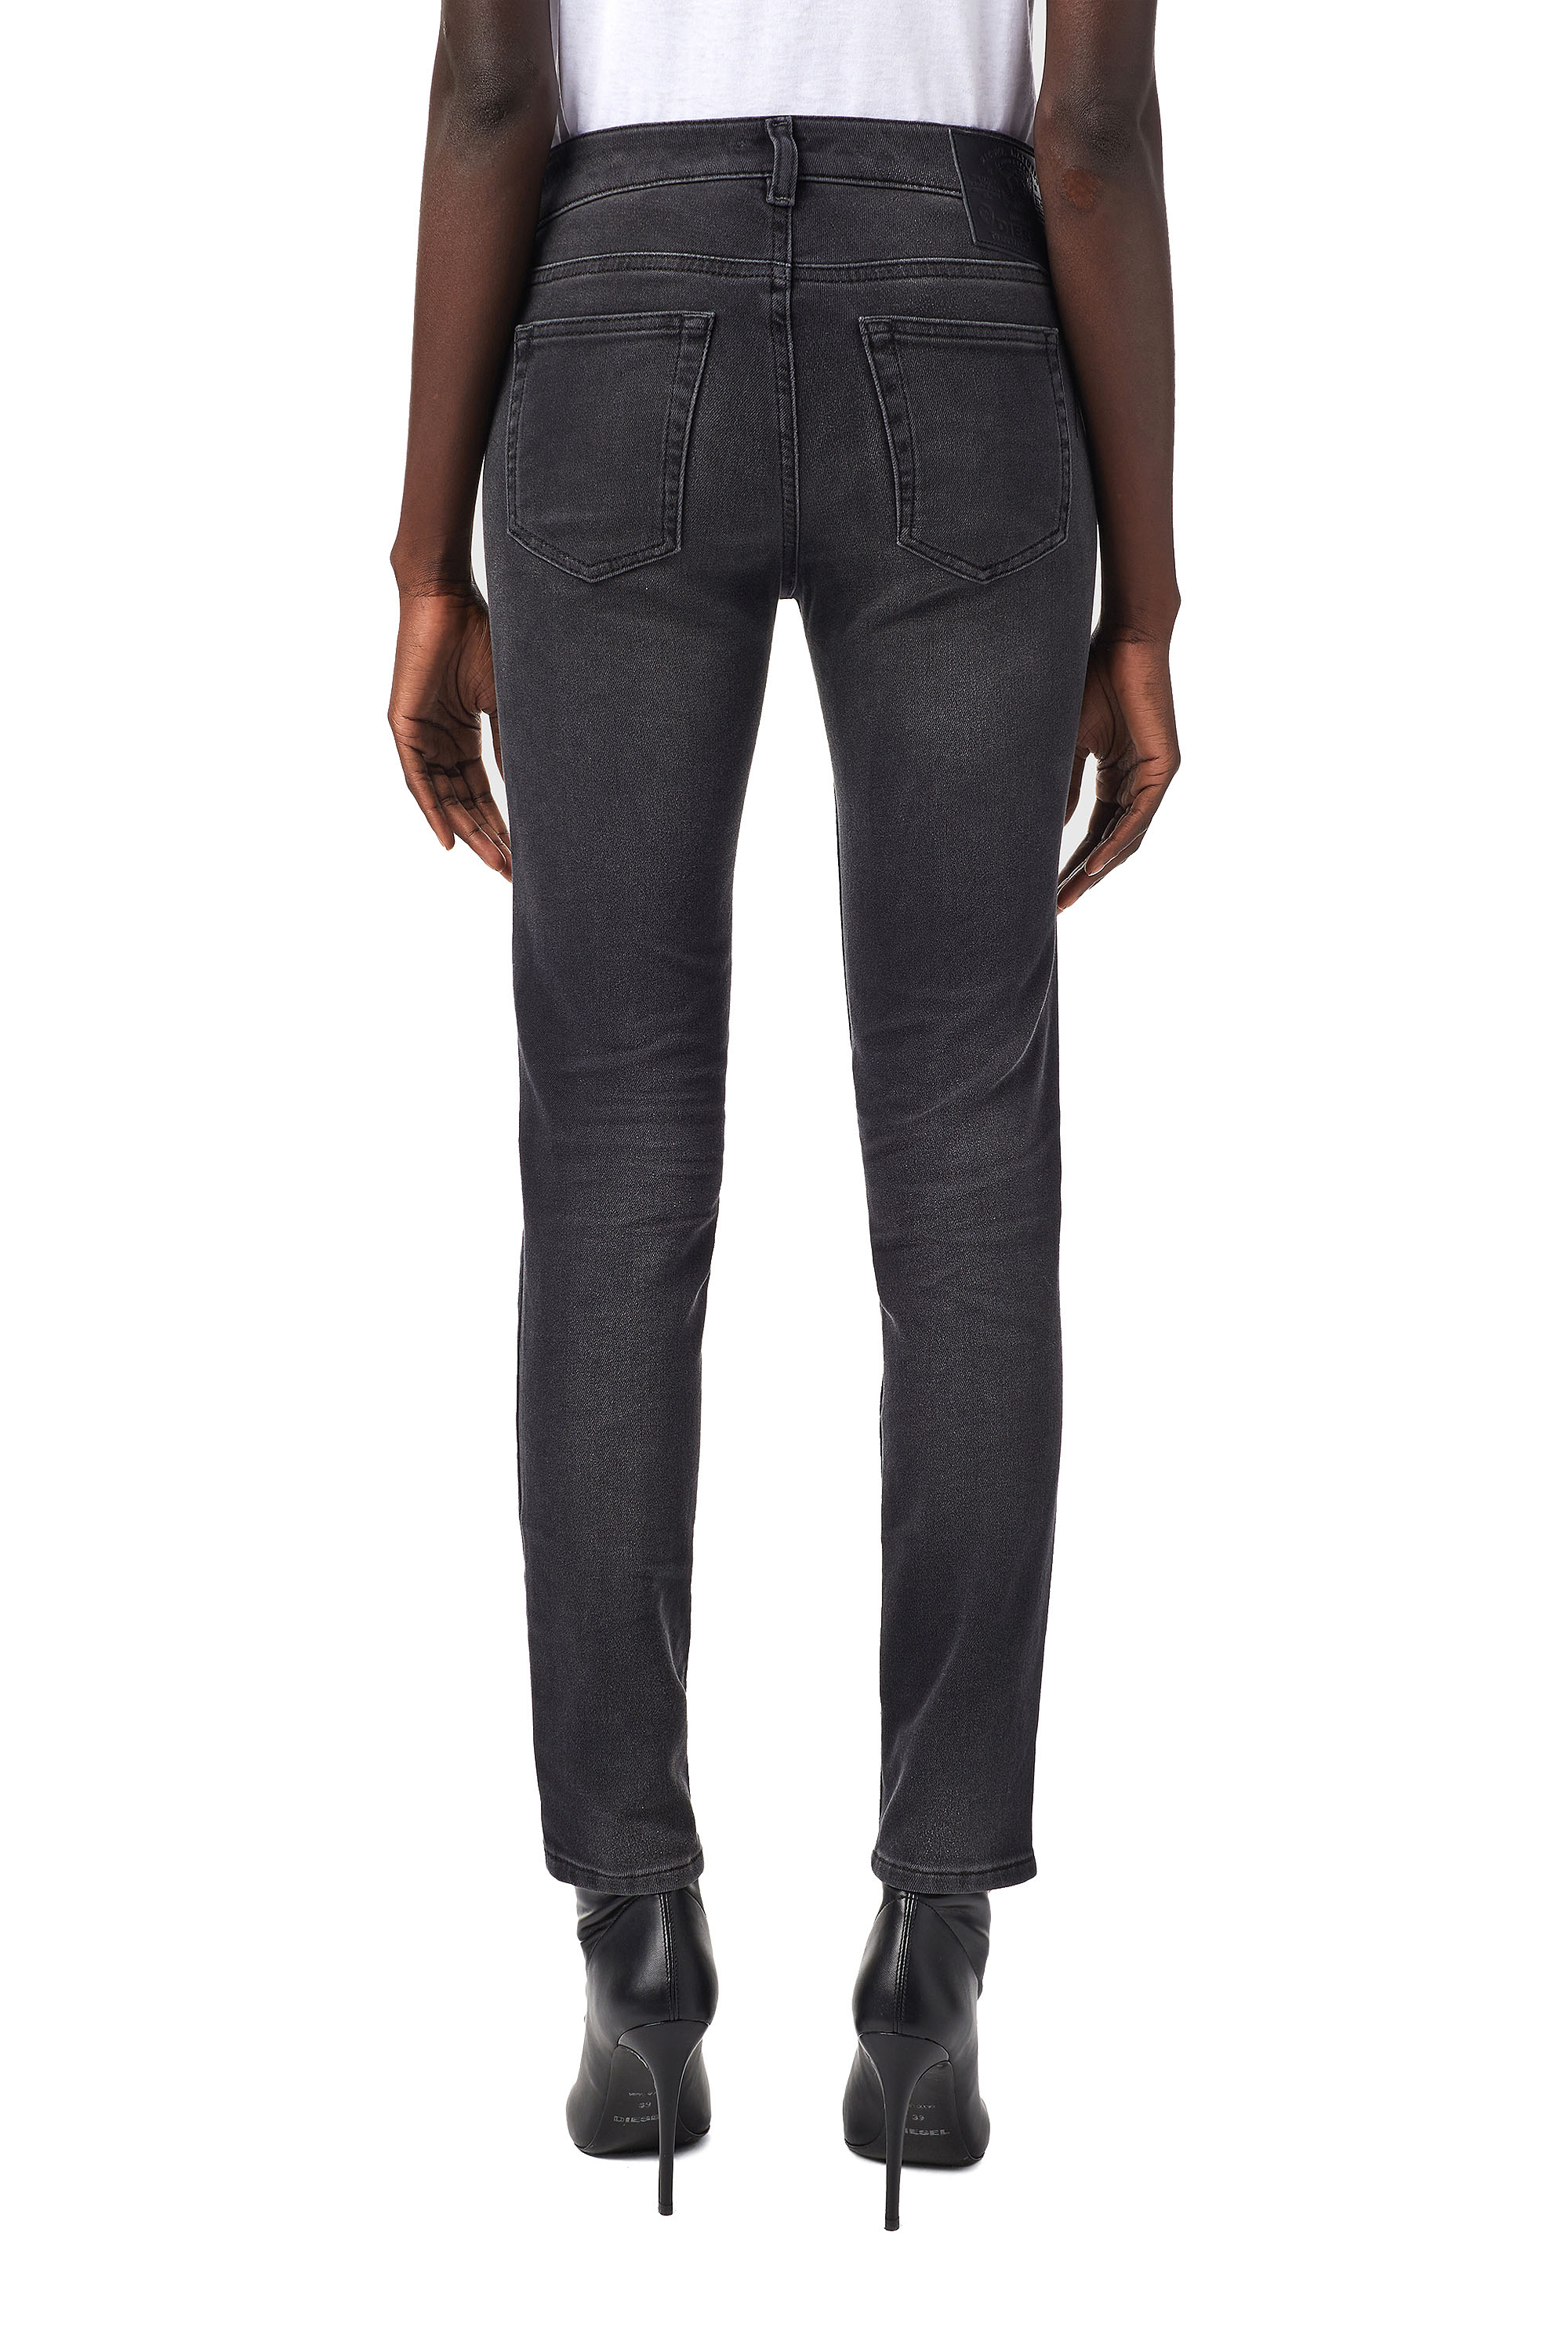 Diesel - D-Ollies Slim JoggJeans® 09B22, Black/Dark grey - Image 2